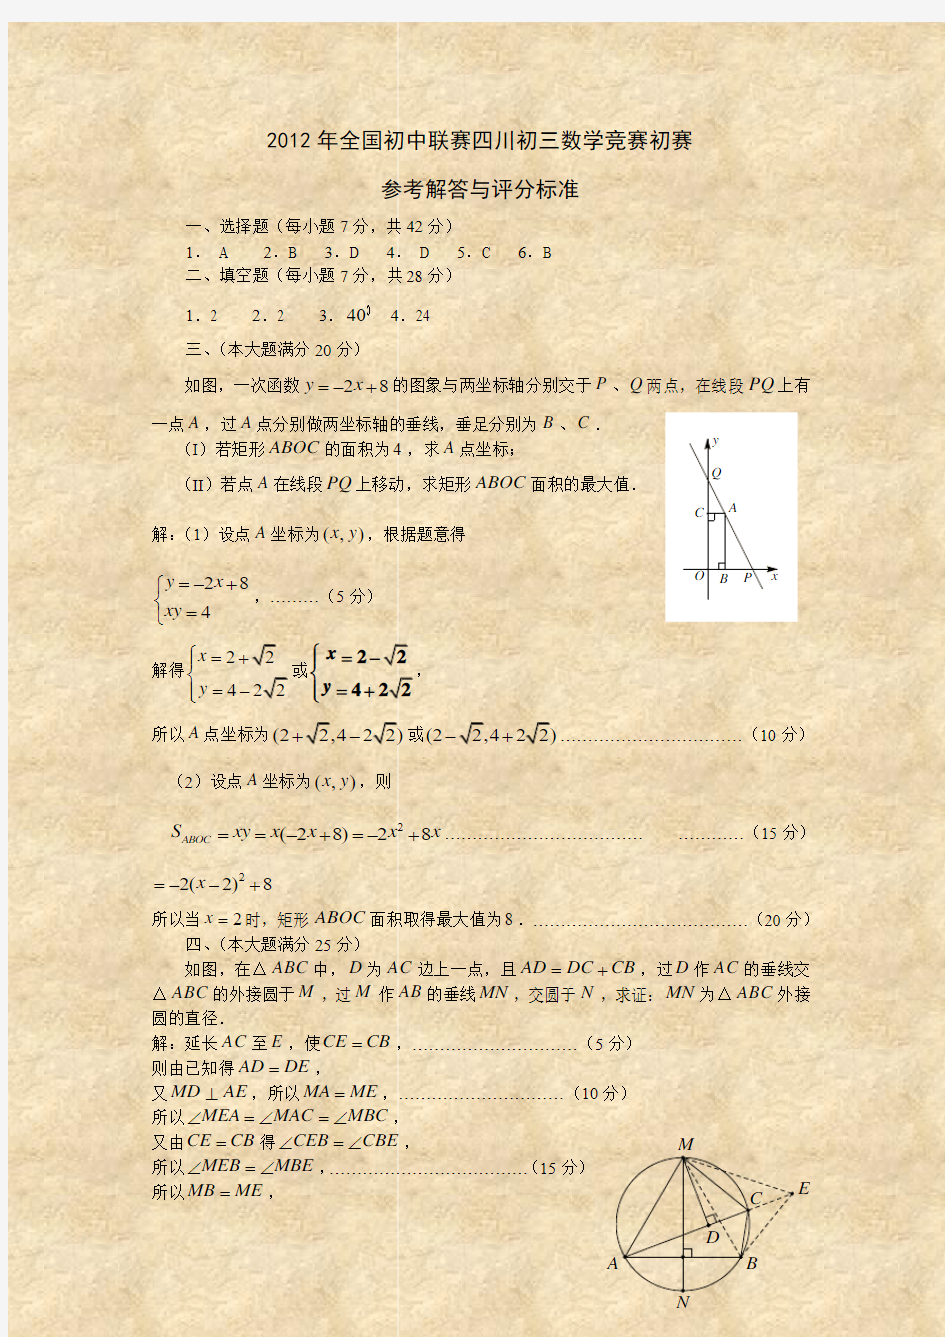 2007年四川省初中数学联赛决赛试卷(初二组)